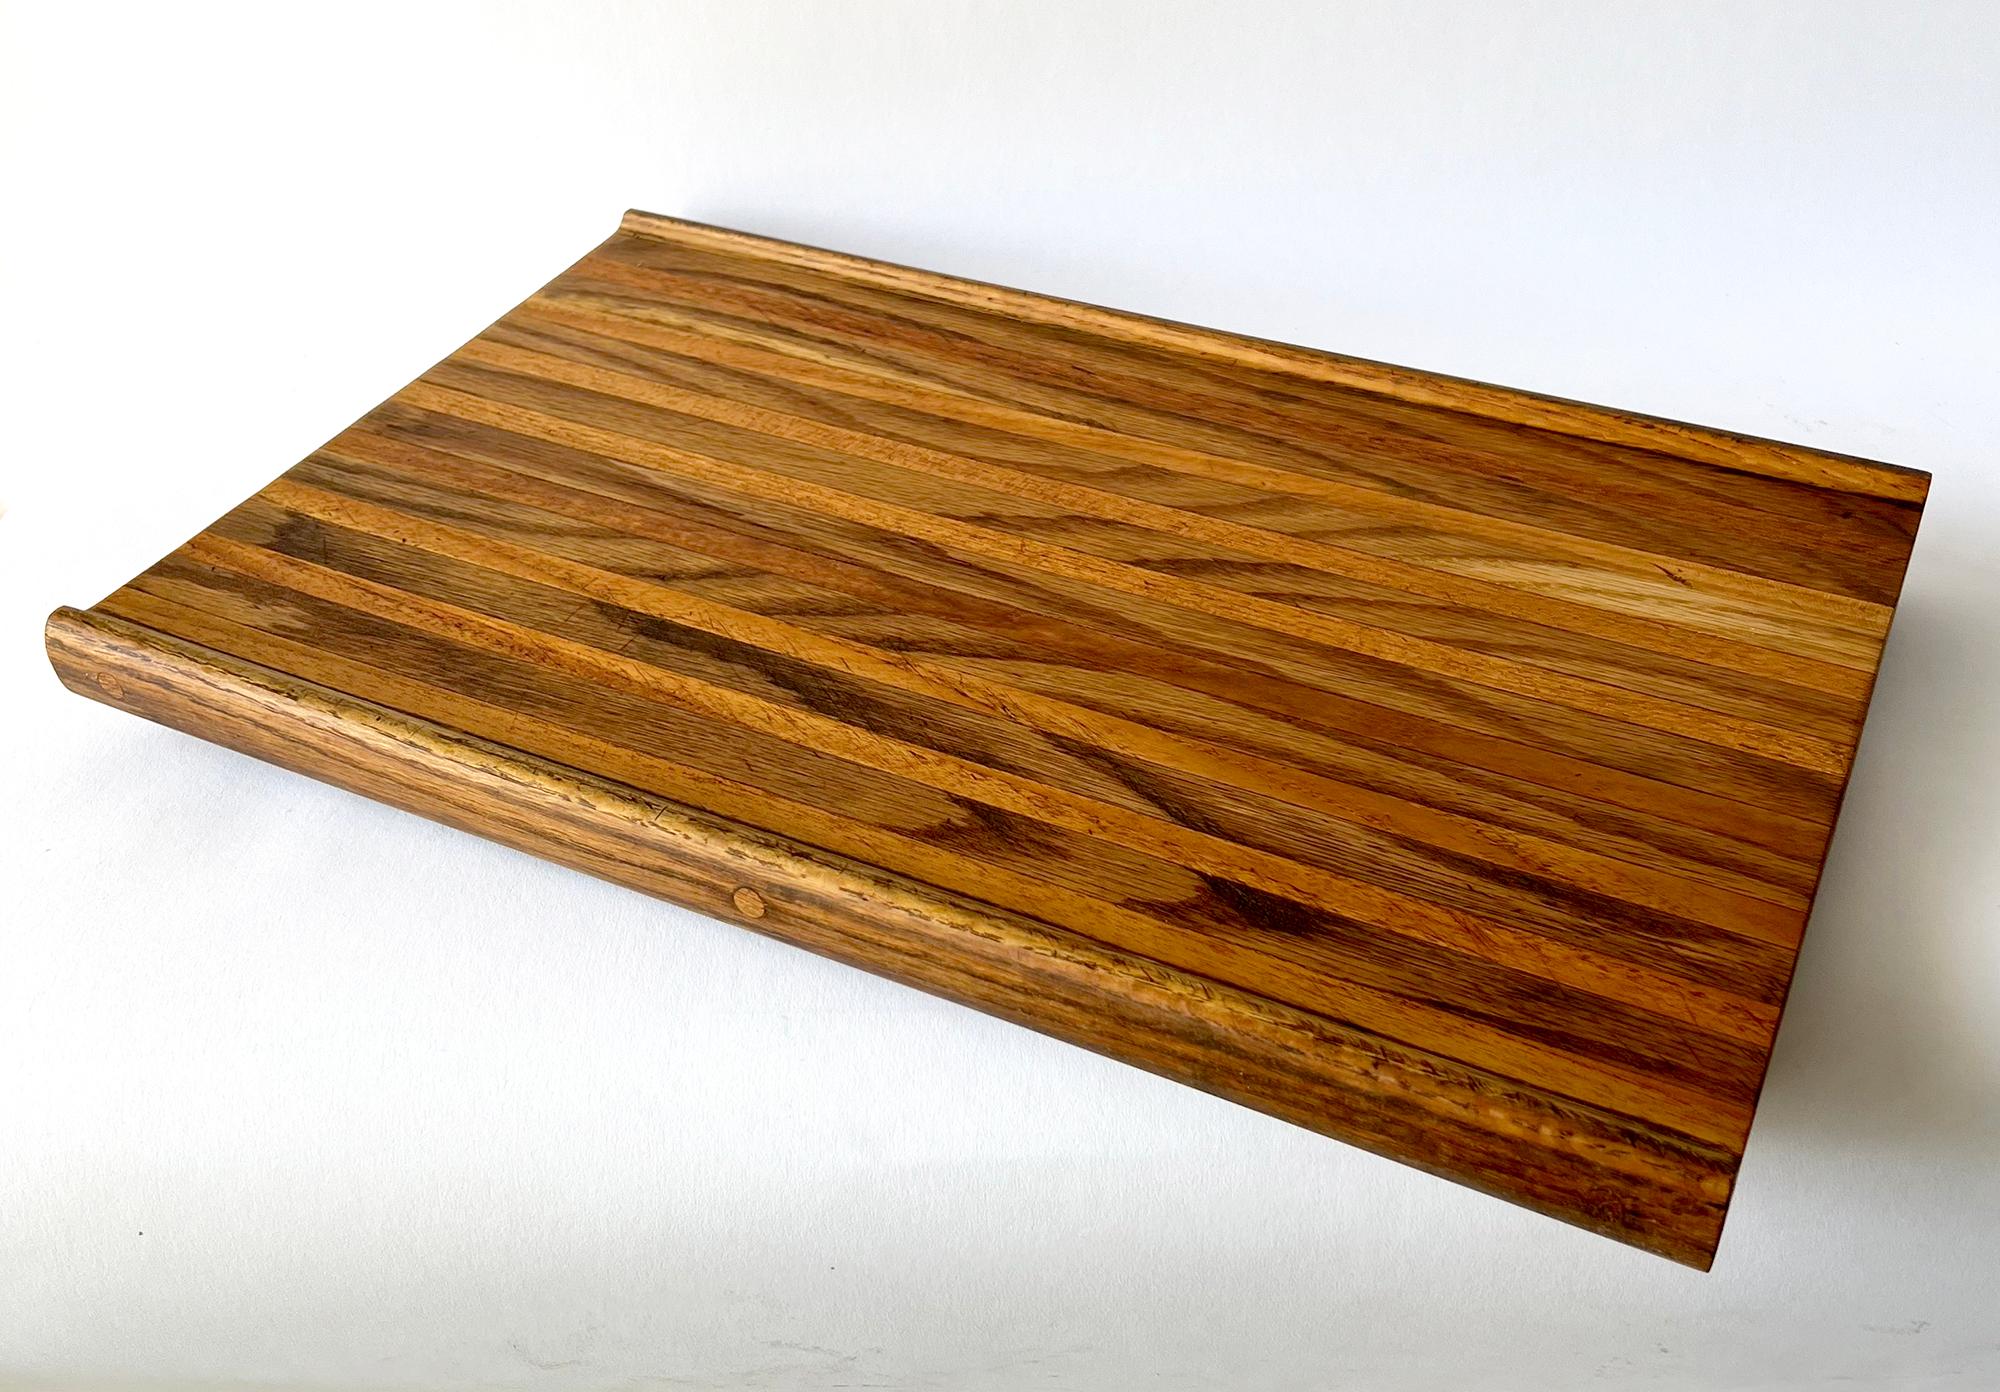 Planche à découper en bois incrusté créée par le menuisier et bijoutier Robert Trout de San Diego, Californie.  La planche mesure 2